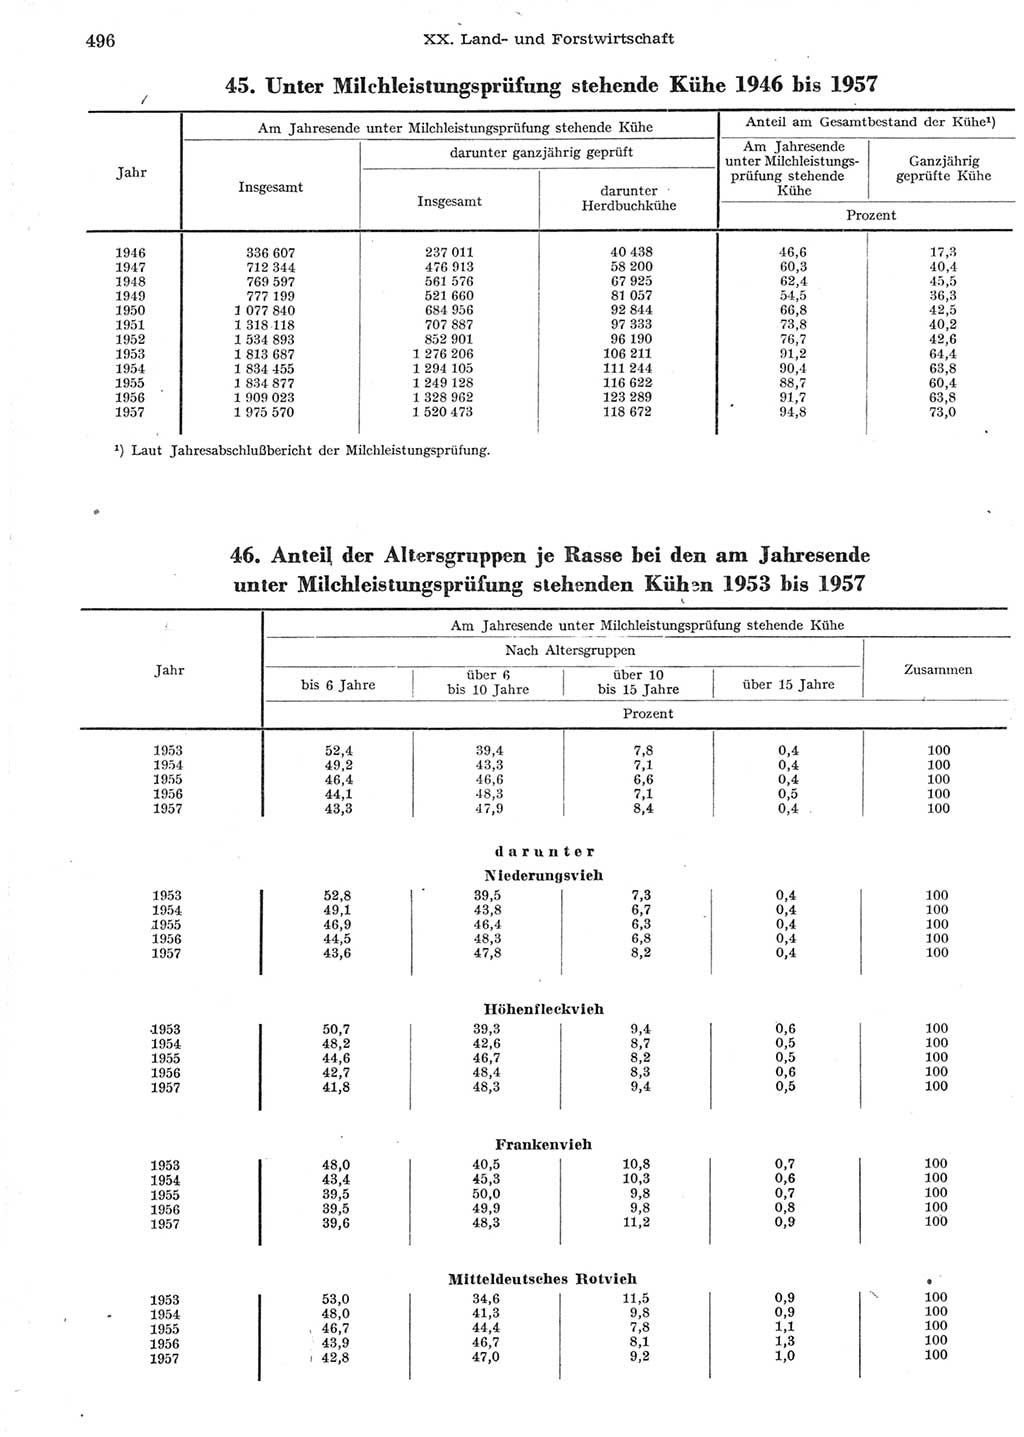 Statistisches Jahrbuch der Deutschen Demokratischen Republik (DDR) 1958, Seite 496 (Stat. Jb. DDR 1958, S. 496)